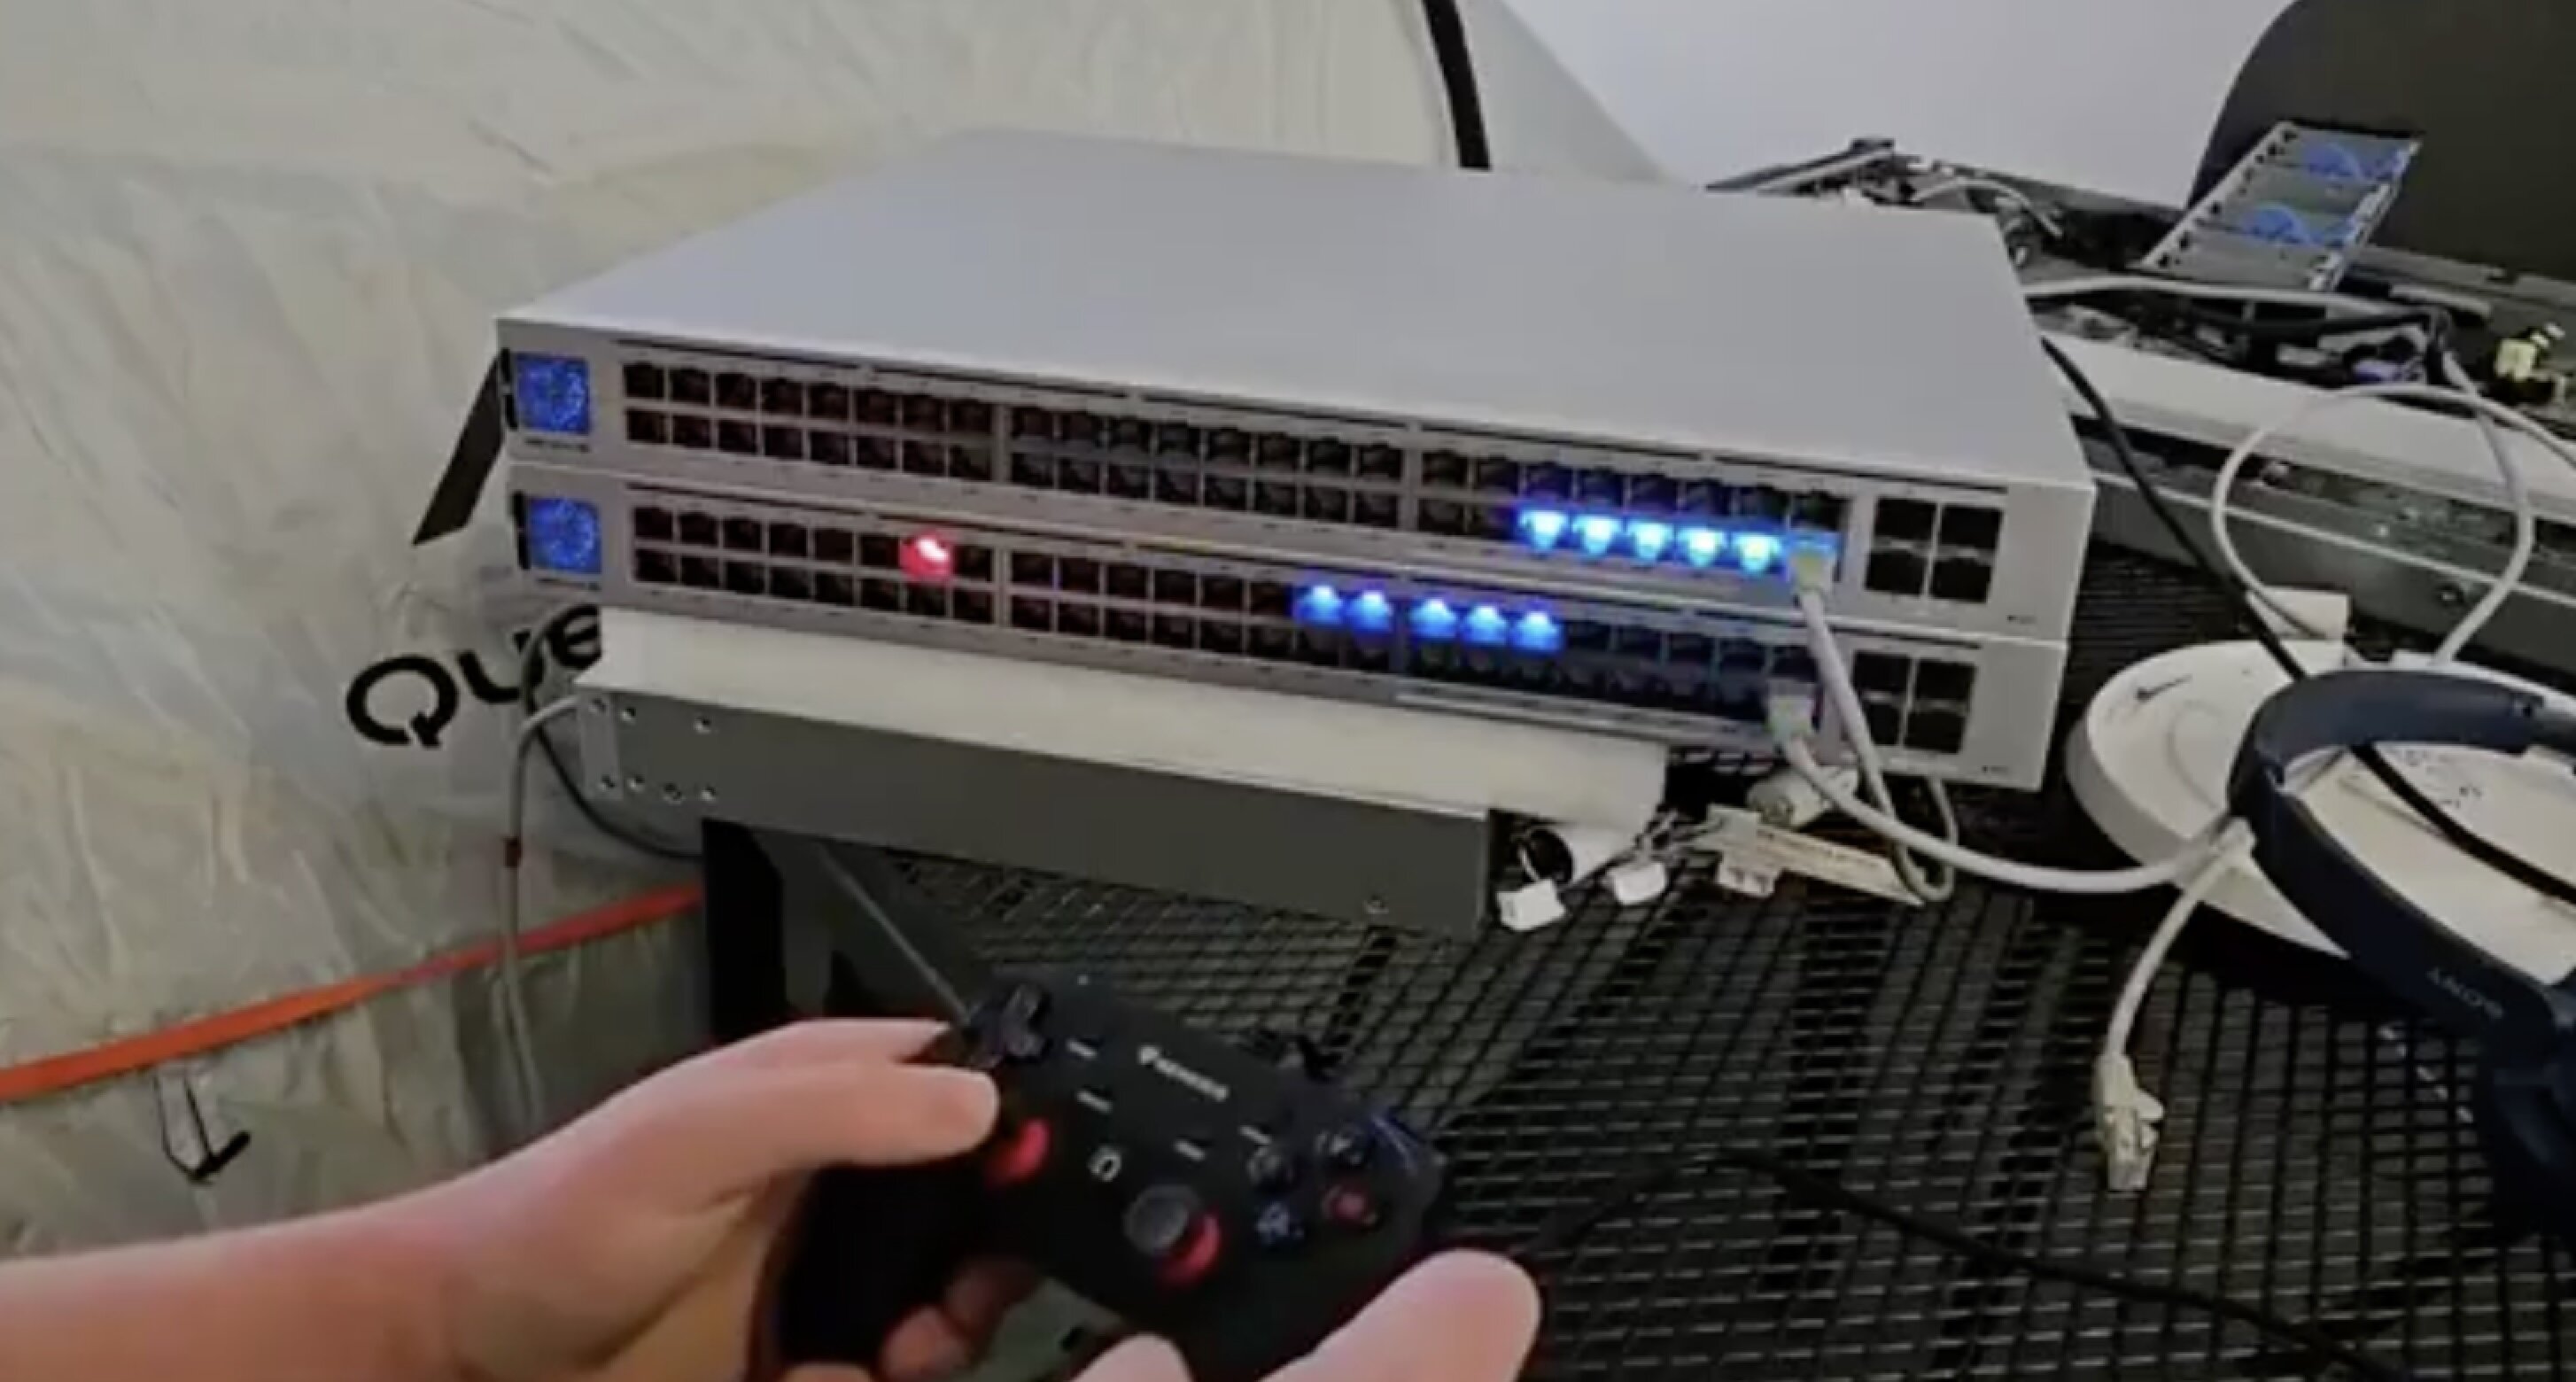 Инженер запрограммировал LED-подсветку портов на коммутаторе, чтобы играть в «Змейку»